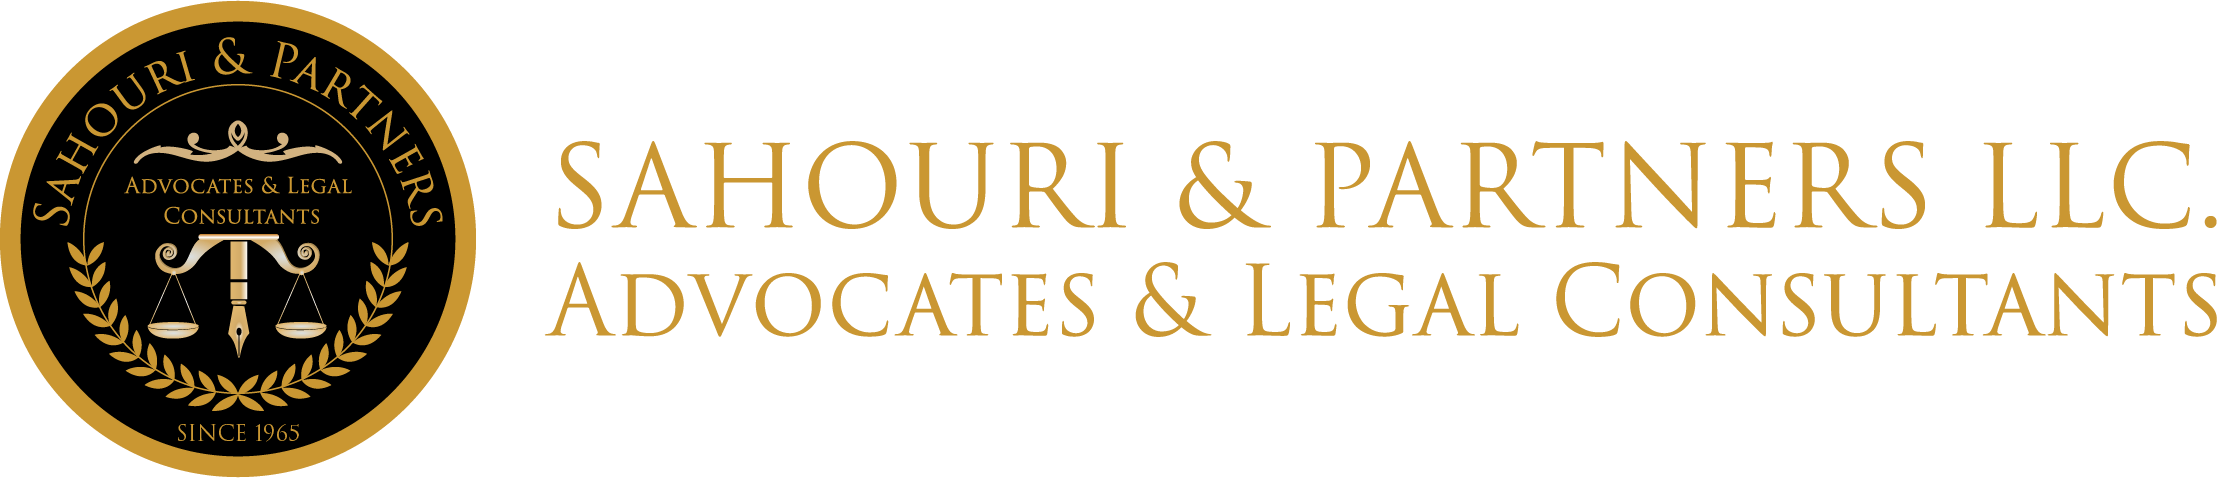 Sahouri Law & Partners - Jordan